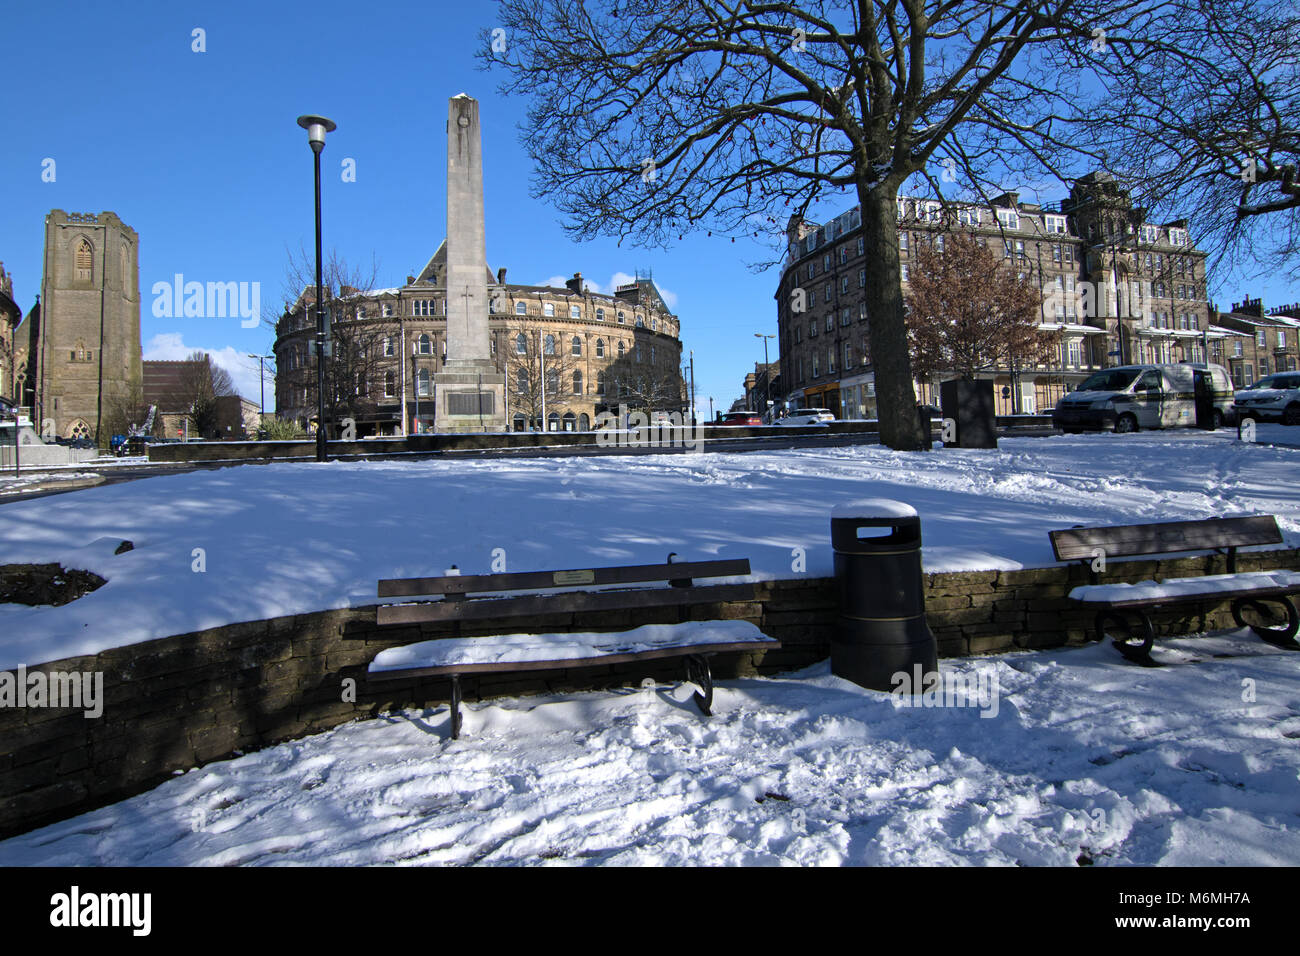 Une scène de la neige dans la région de Harrogate centre ville de Montpellier Hill, North Yorkshire, Angleterre, Royaume-Uni. Banque D'Images